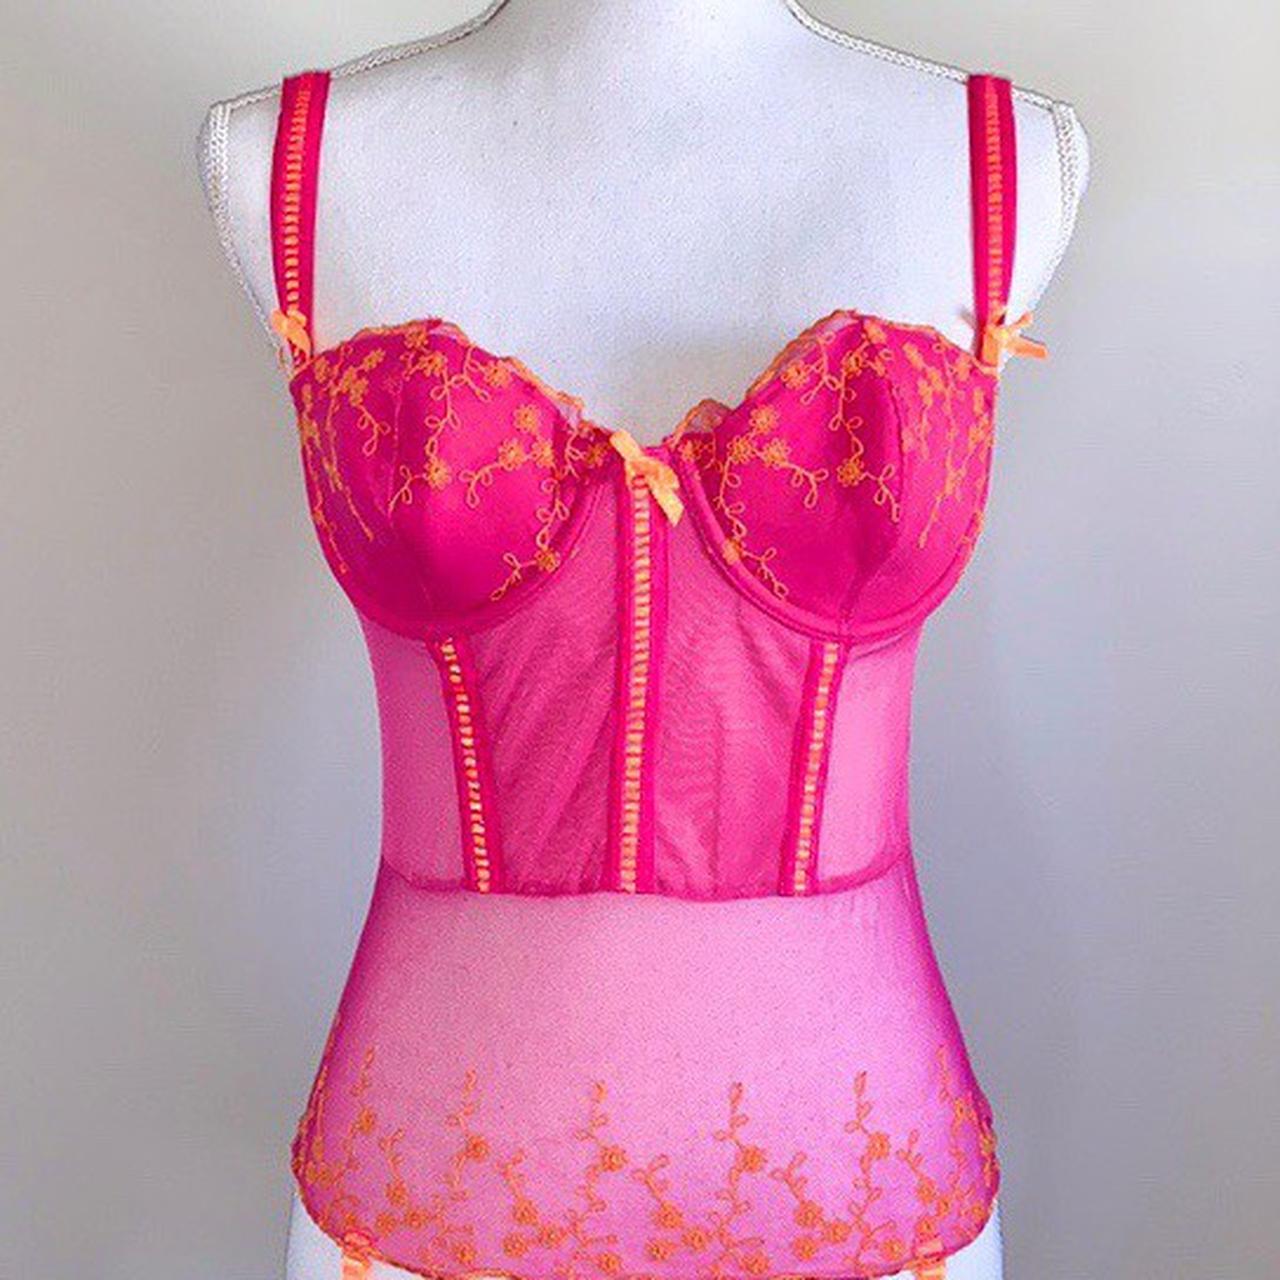 Victoria's Secret y2k corset Vintage floral corset - Depop